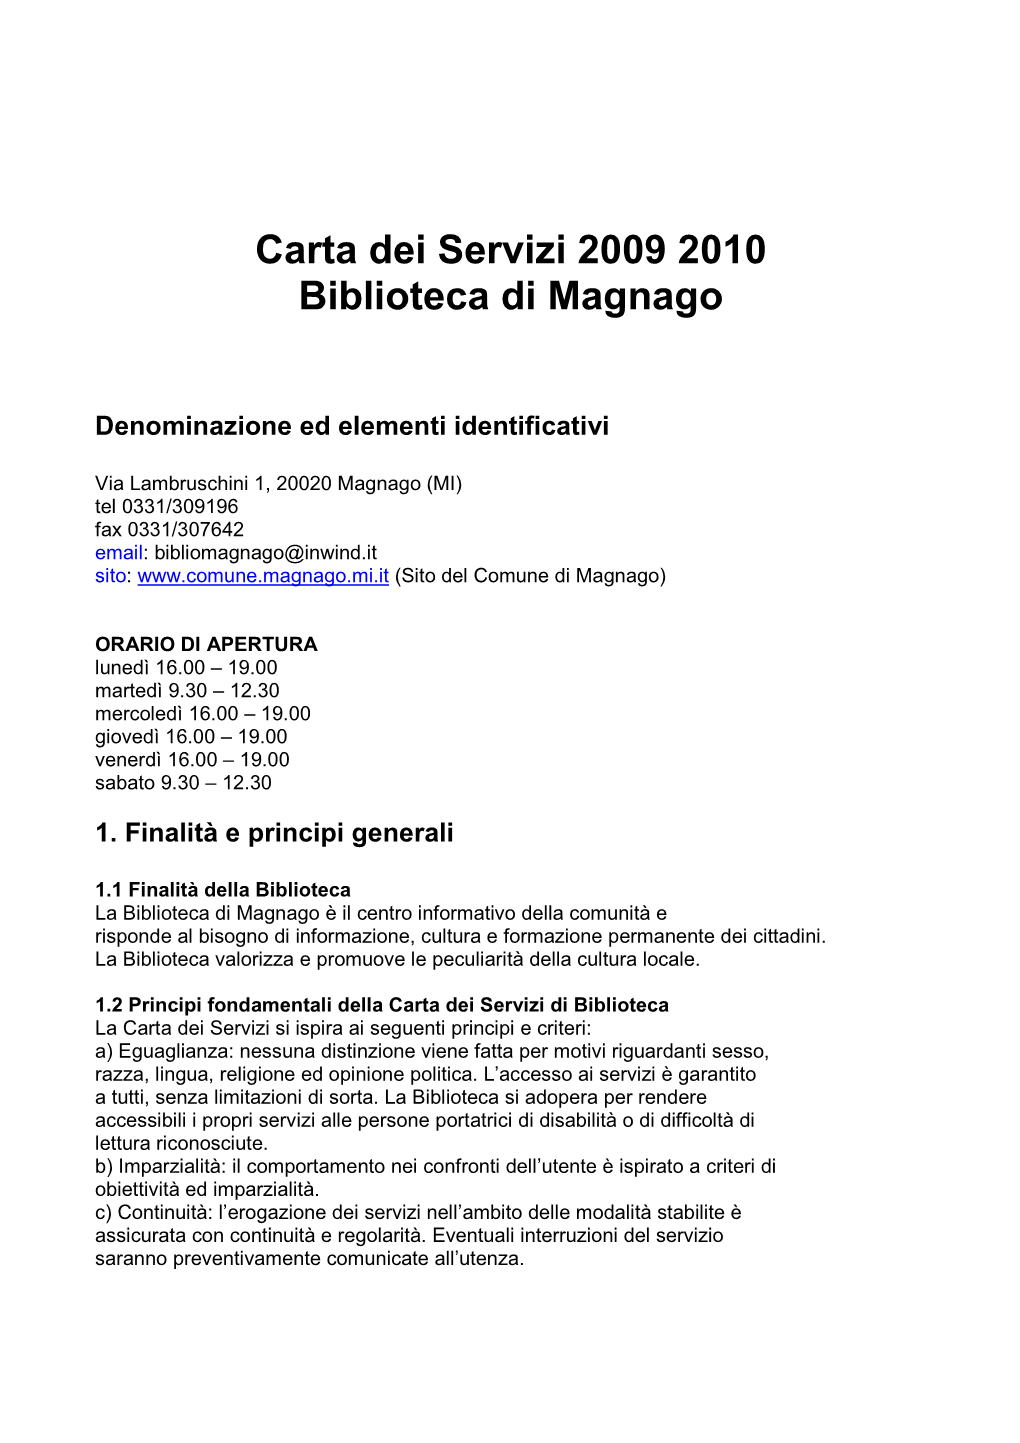 Carta Dei Servizi 2009 2010 Biblioteca Di Magnago